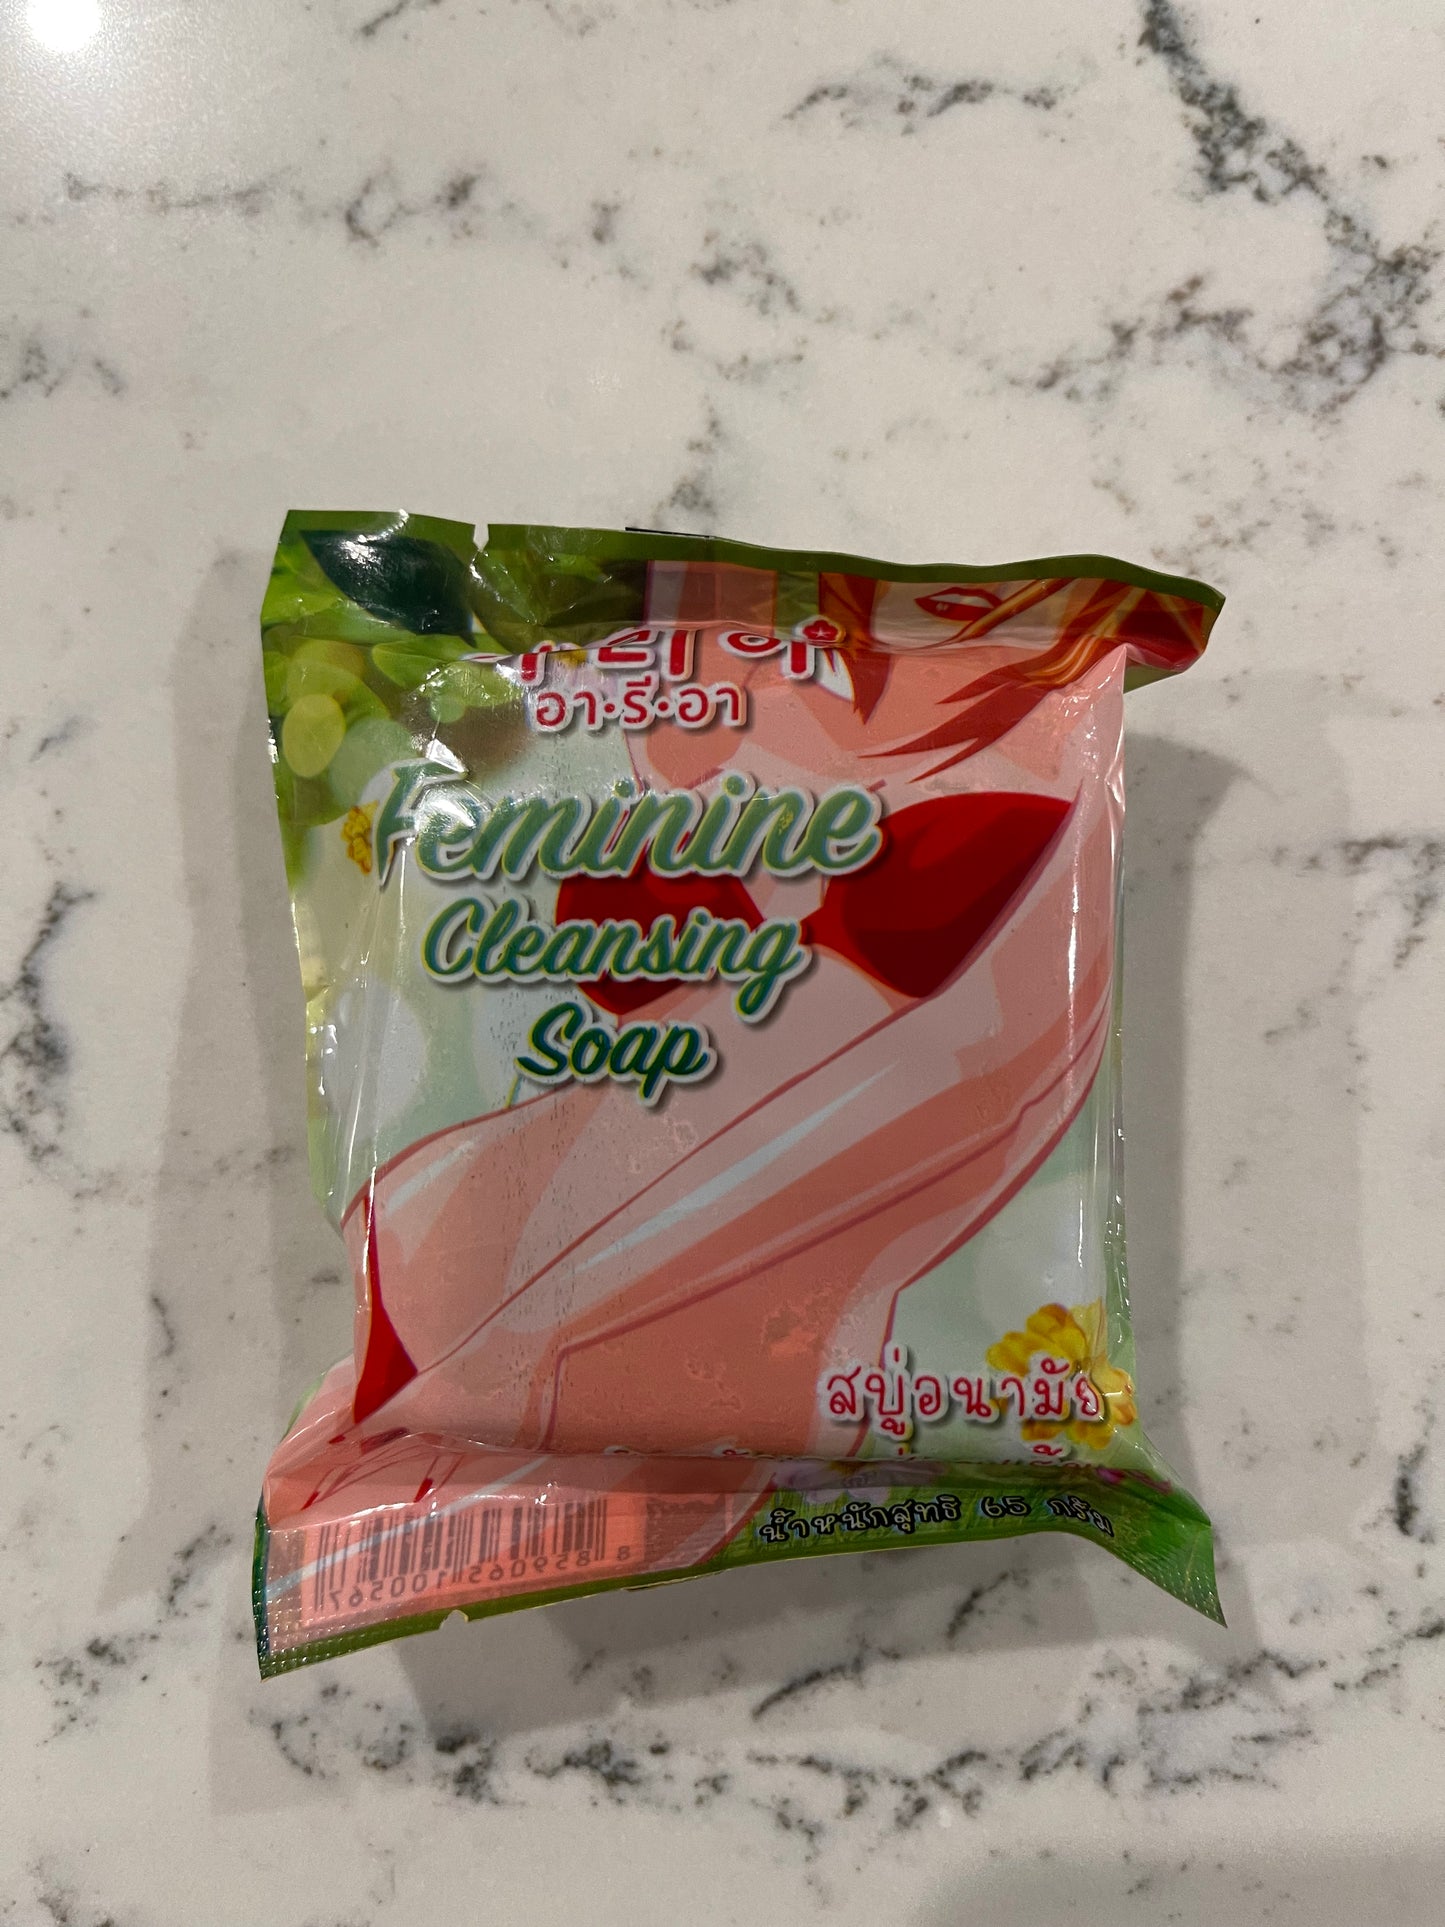 Aria Feminine Cleansing Soap